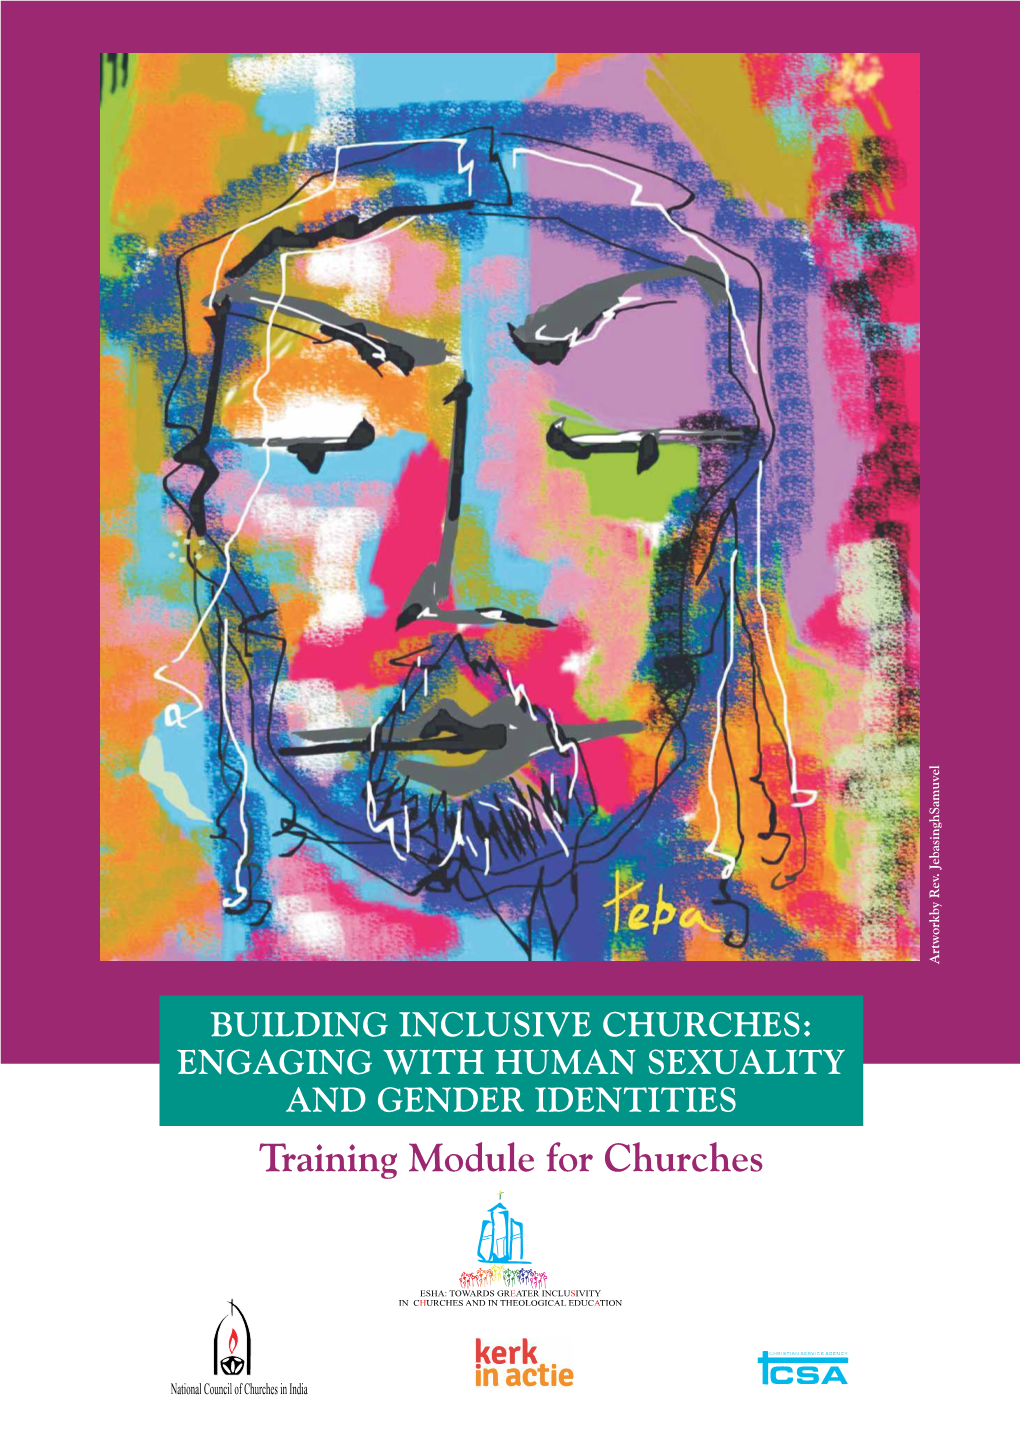 Training Module for Churches